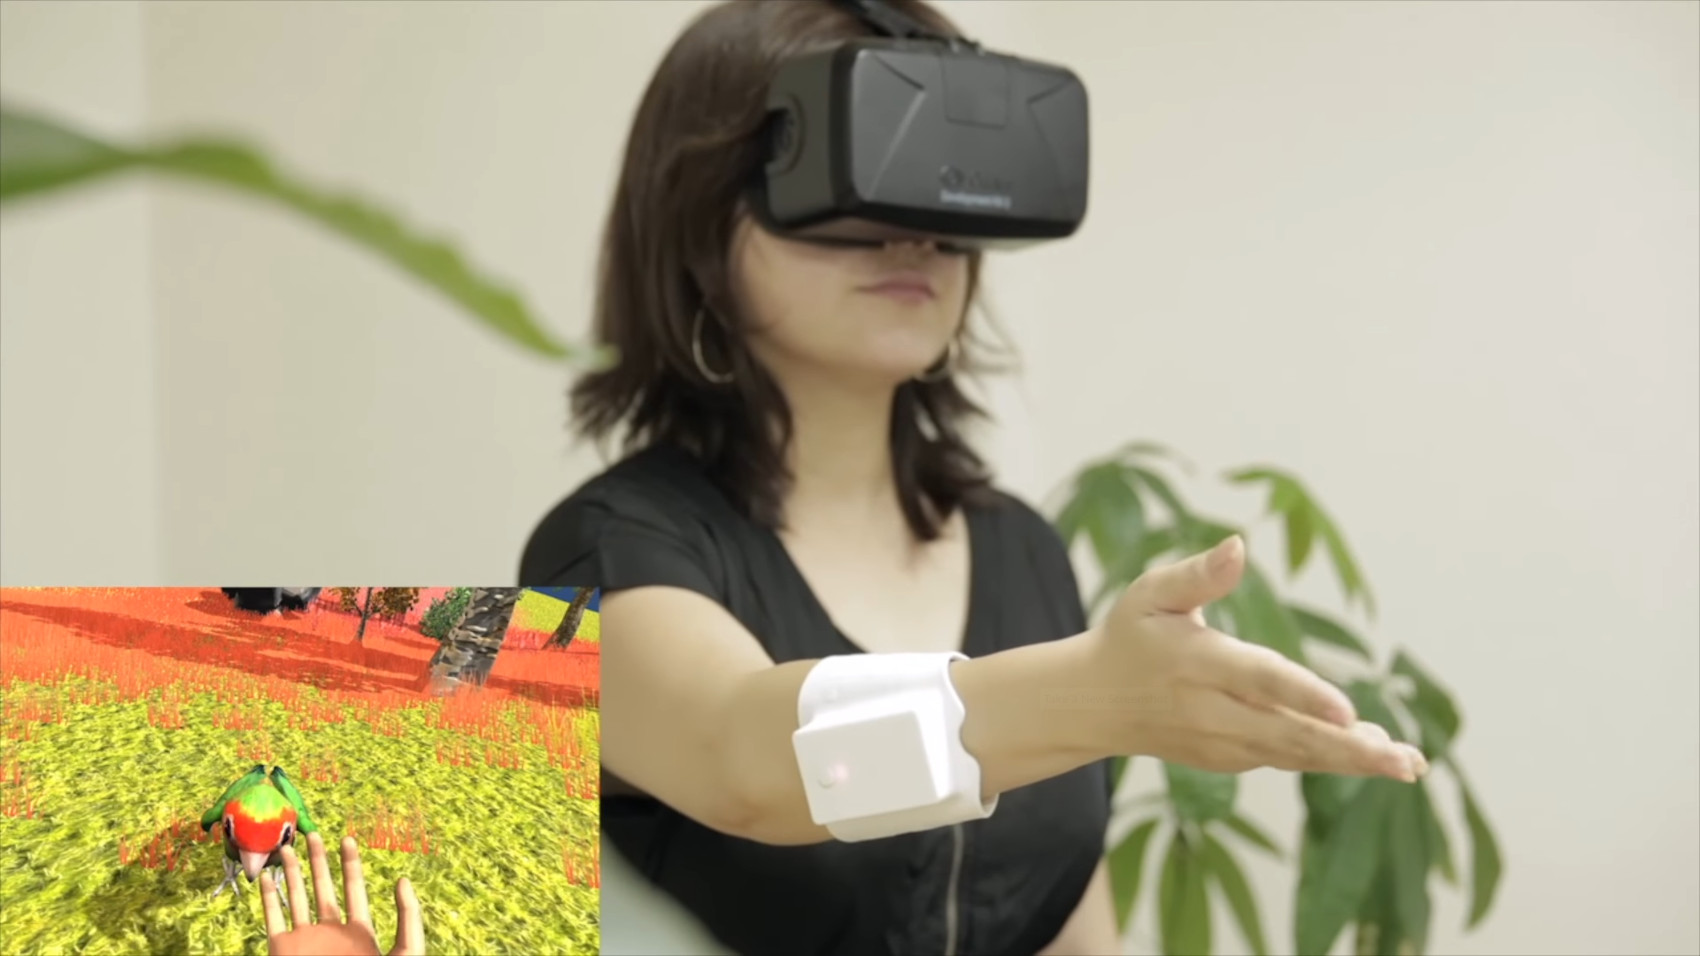 H2L Technologies VR Tech